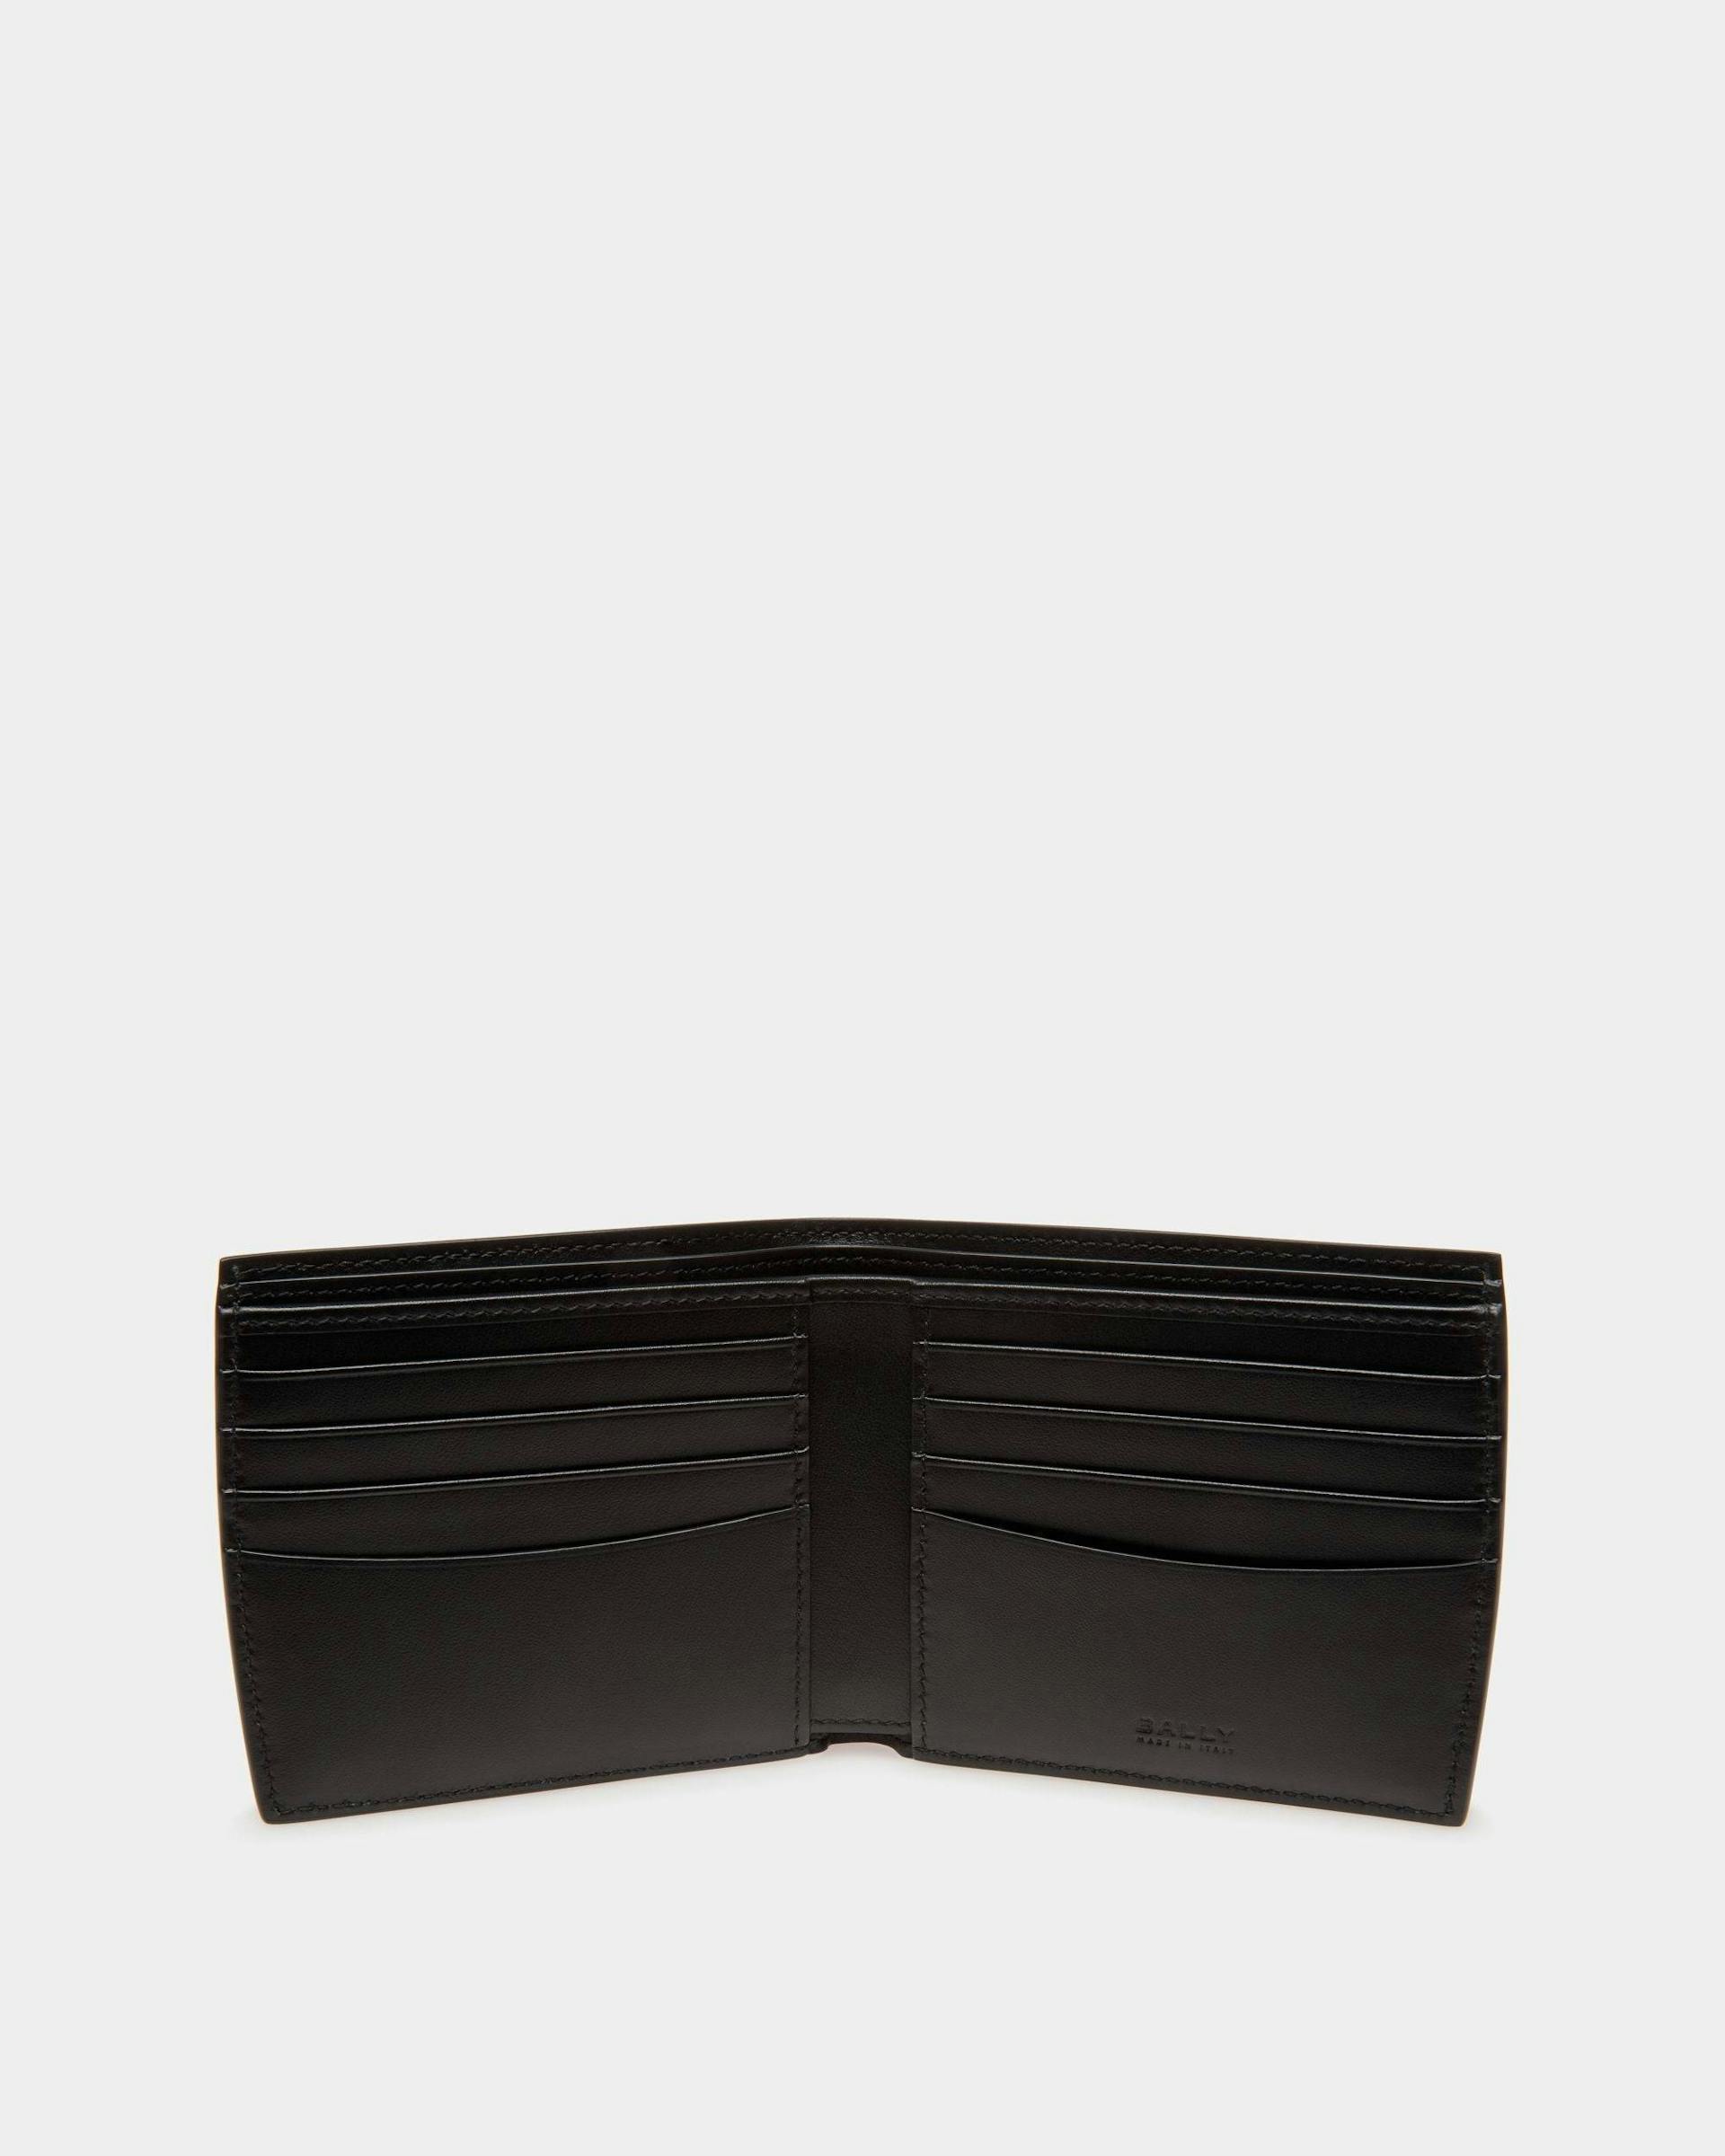 Men's Busy Bally Bifold Wallet in Black Leather | Bally | Still Life Open / Inside